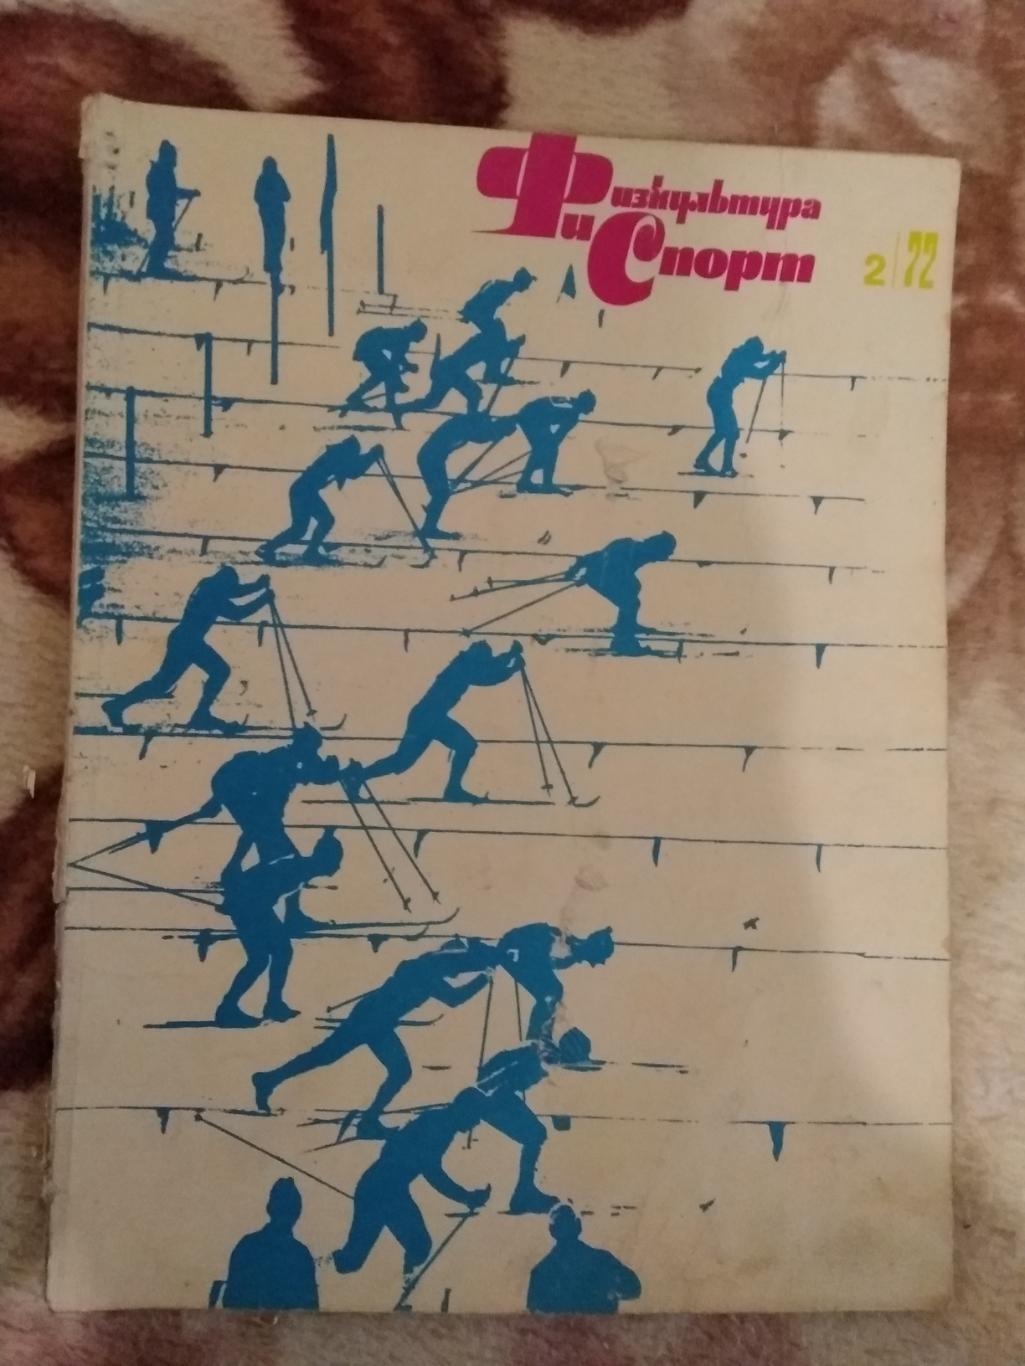 Журнал.Физкультура и спорт № 2 1972 г. (ФиС).